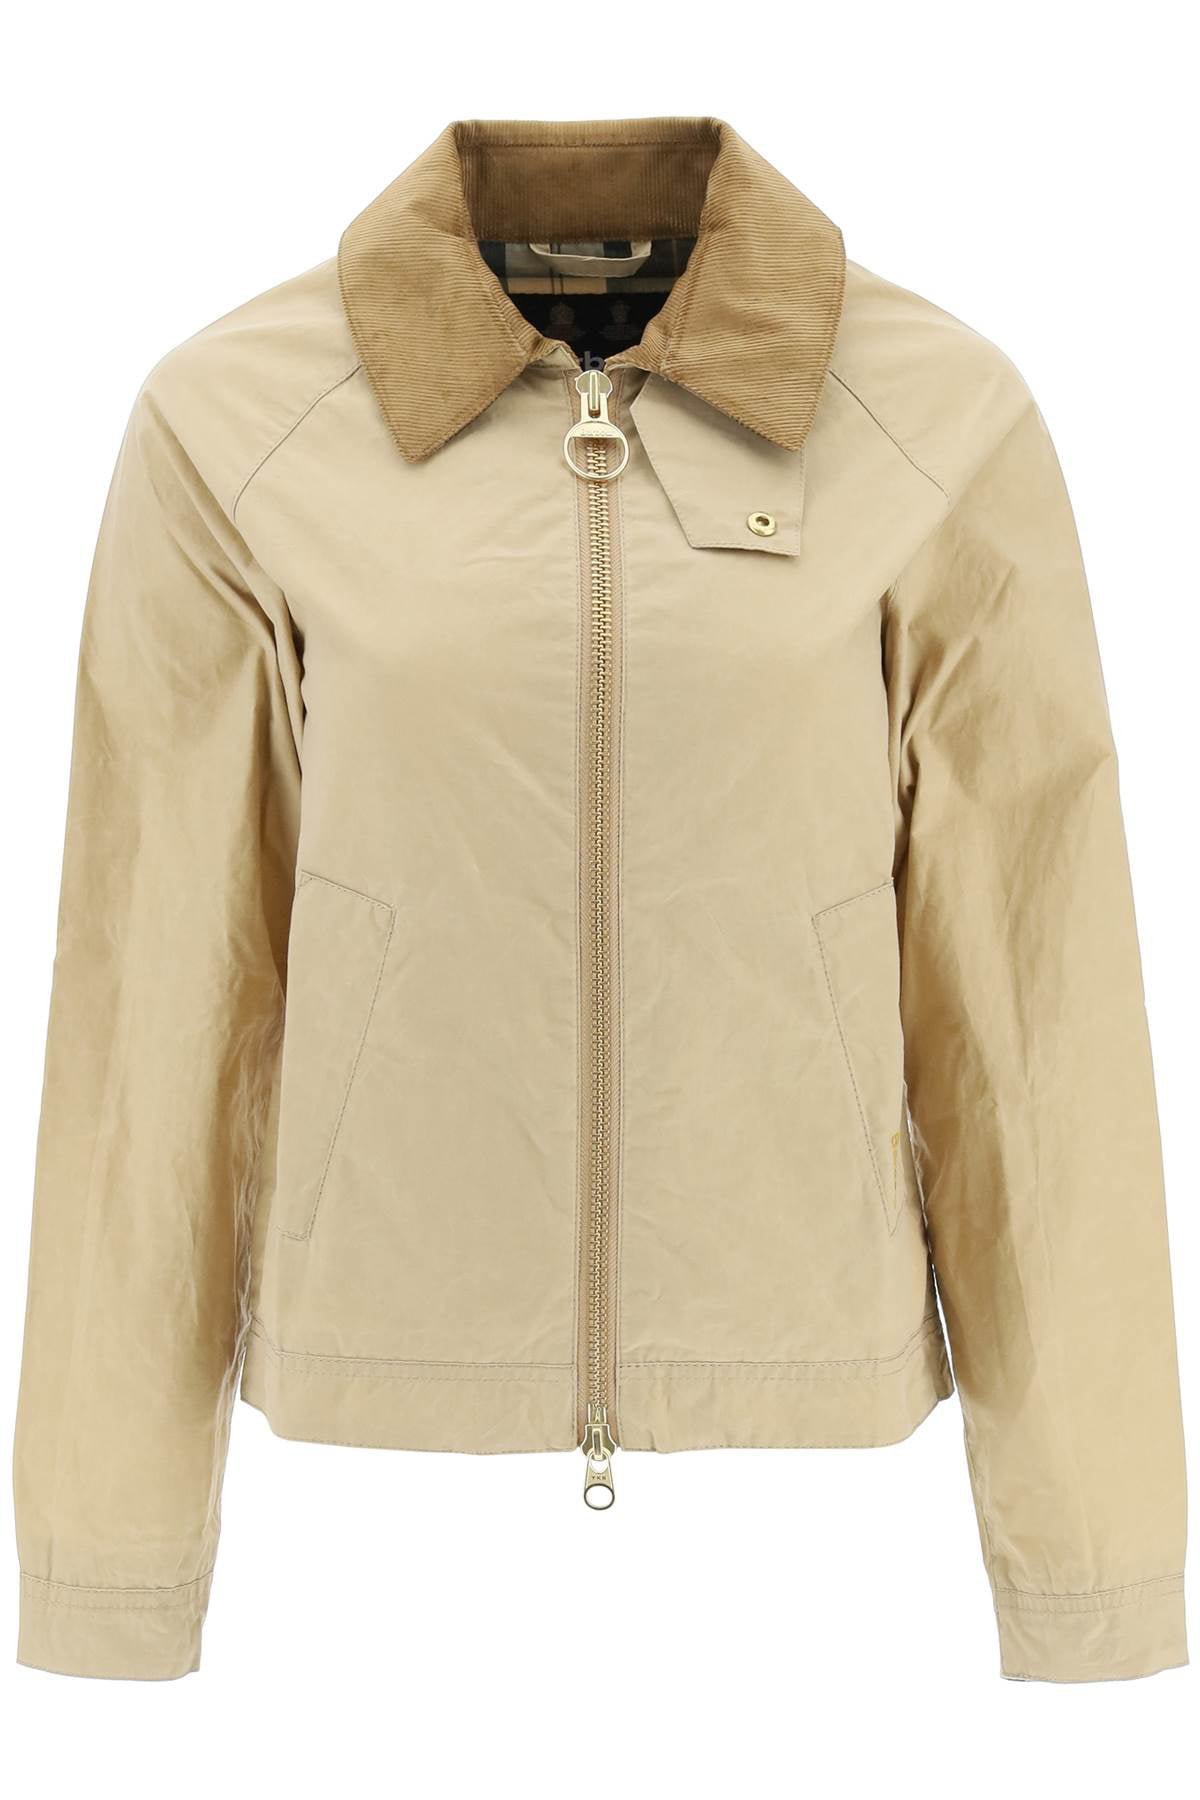 Barbour vintage 'campbell' overshirt jacket - Walmart.com